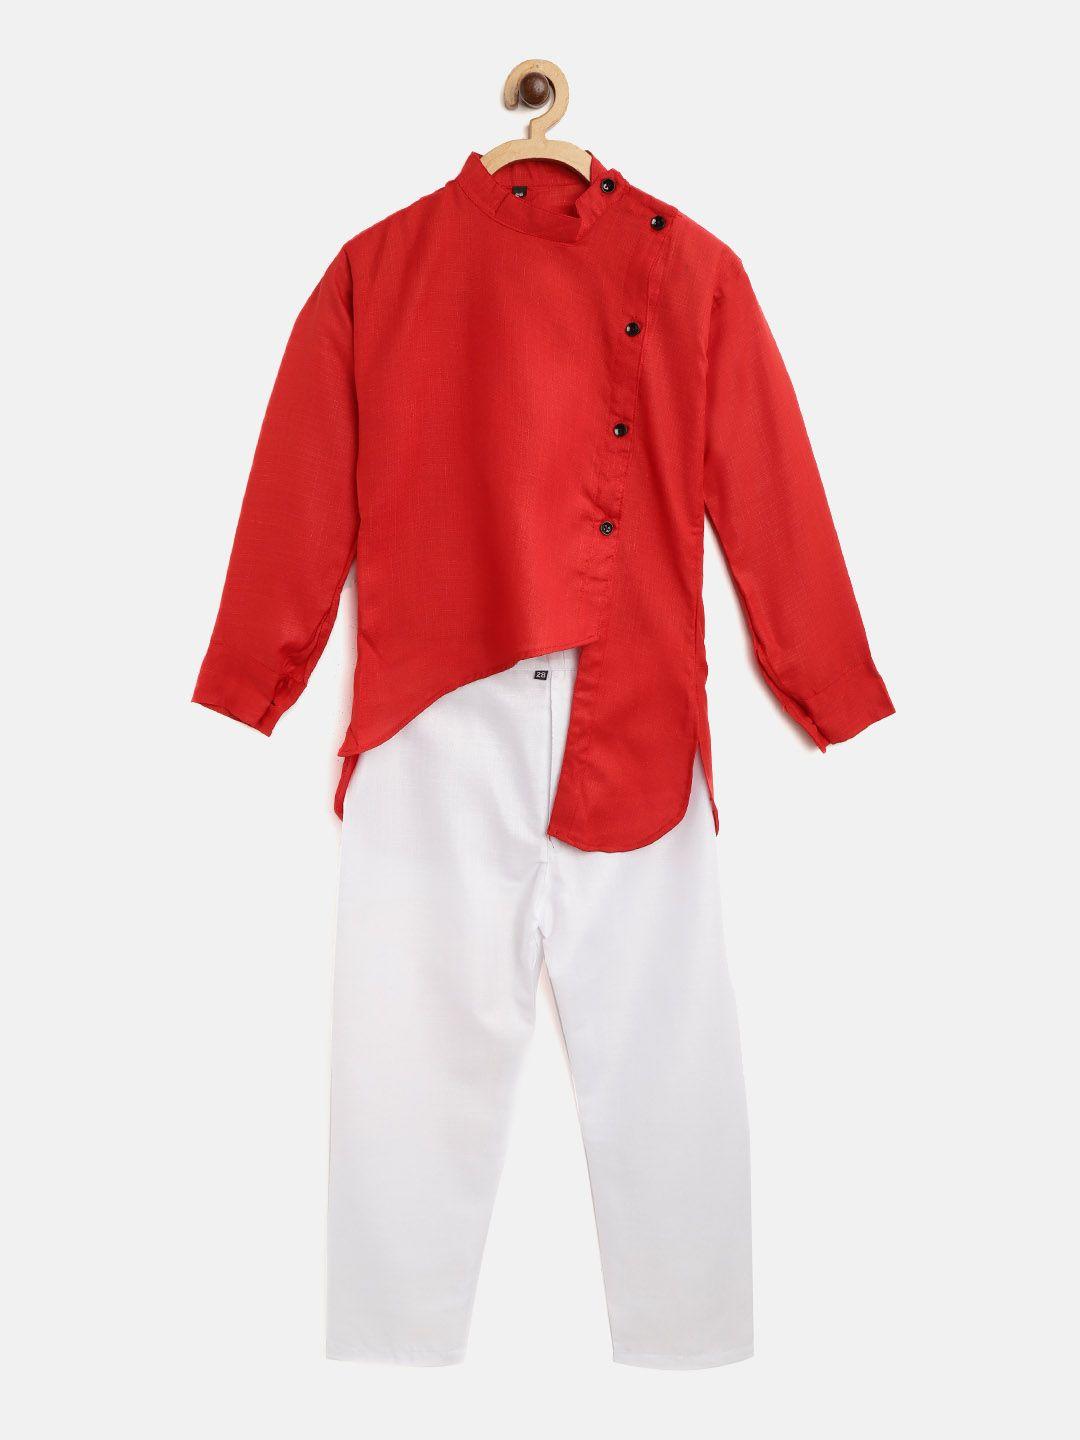 ad & av boys red & white solid kurta with pyjamas